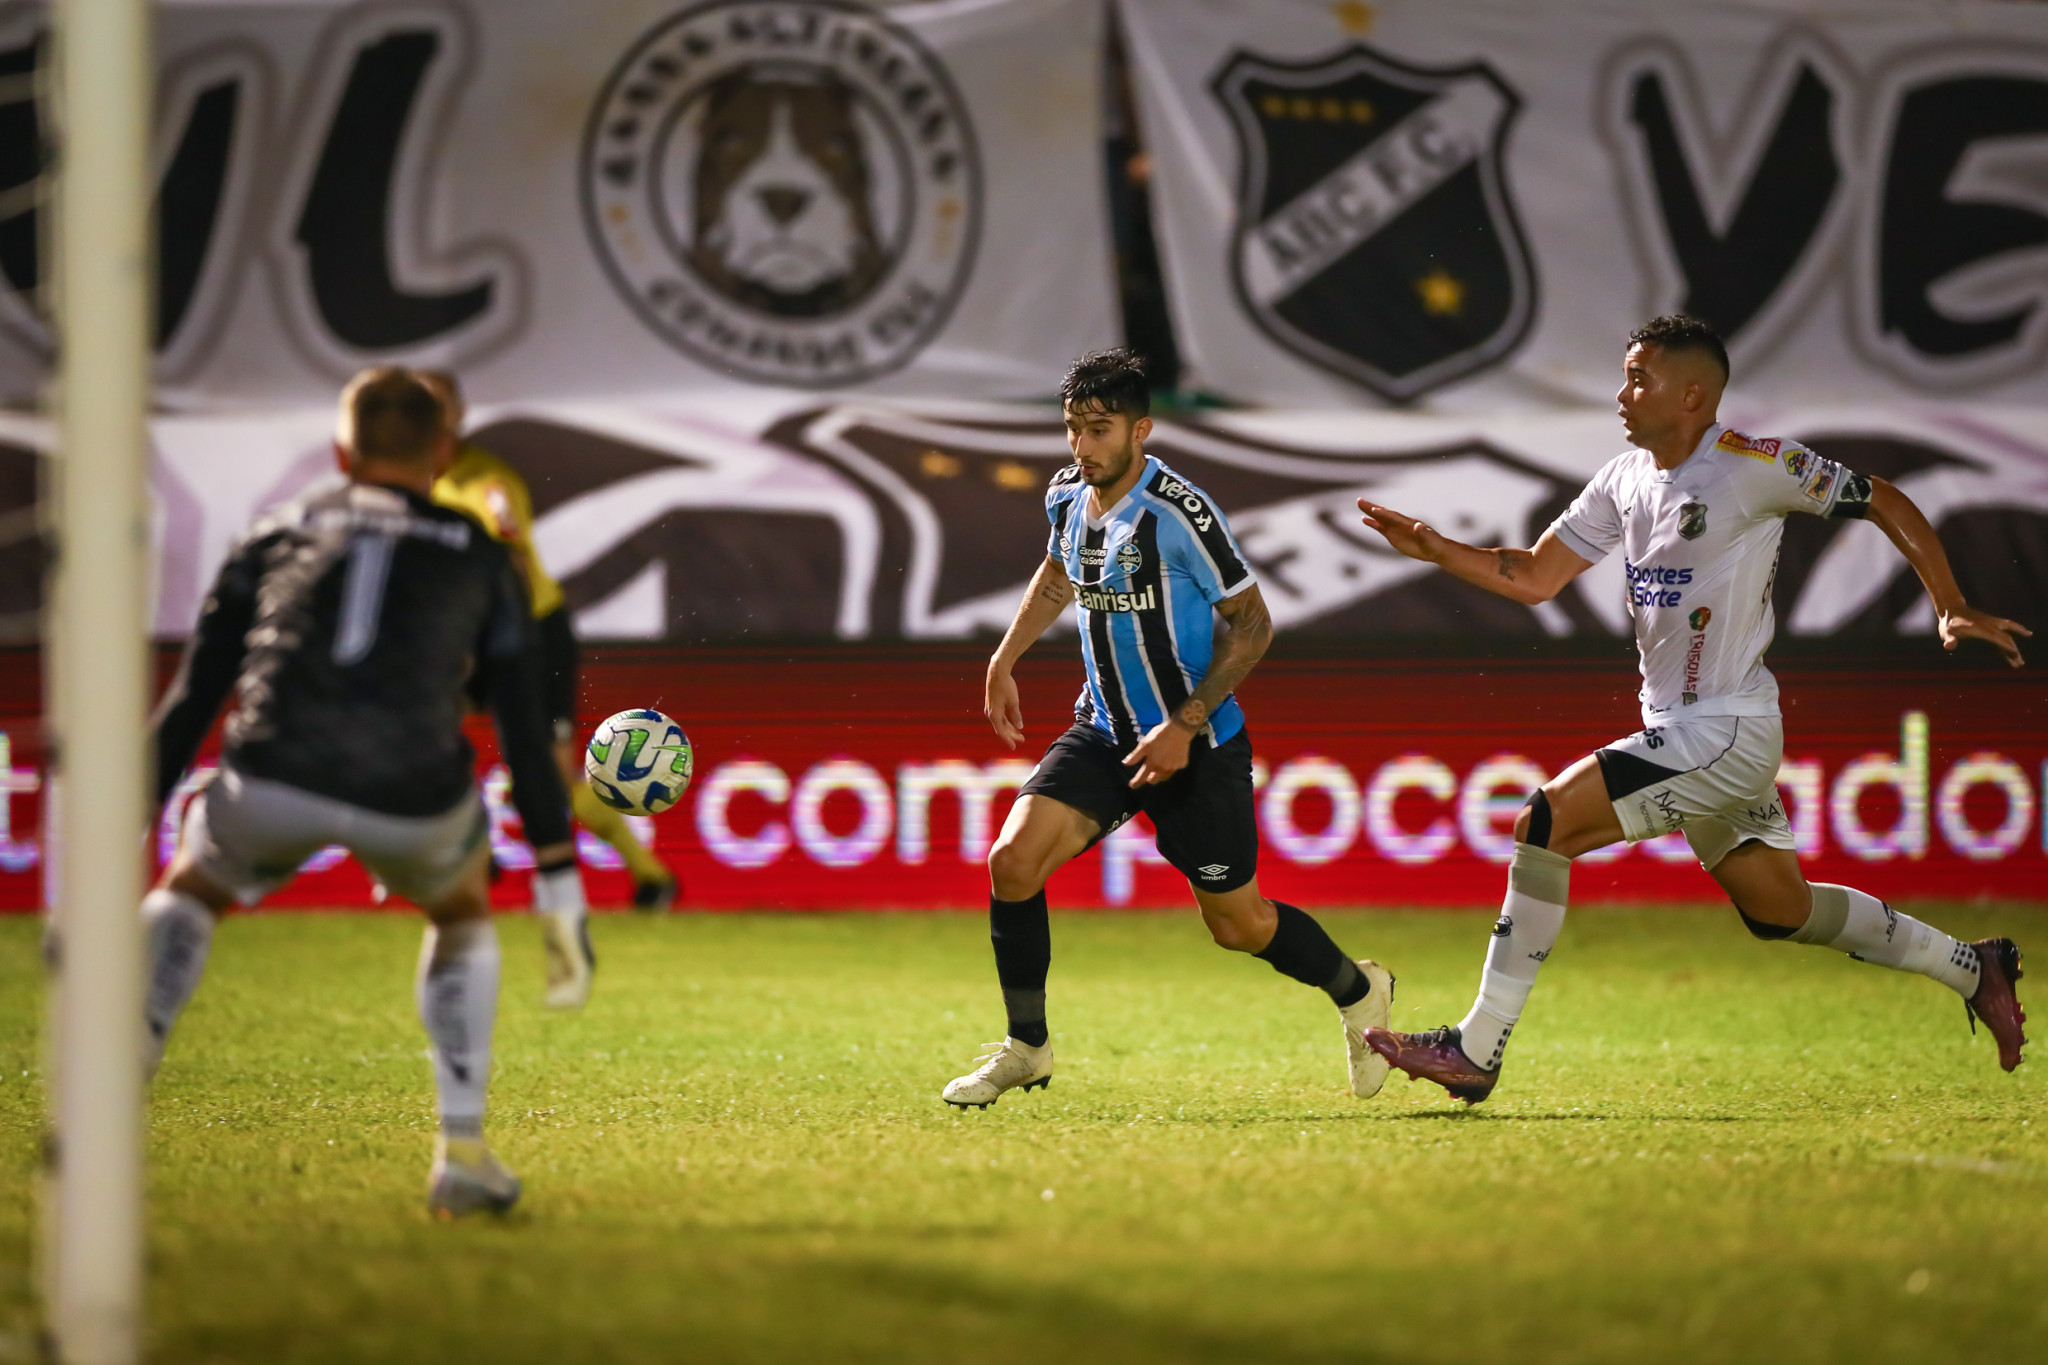 Ceará SC vs Tombense: A Clash of Two Strong Teams